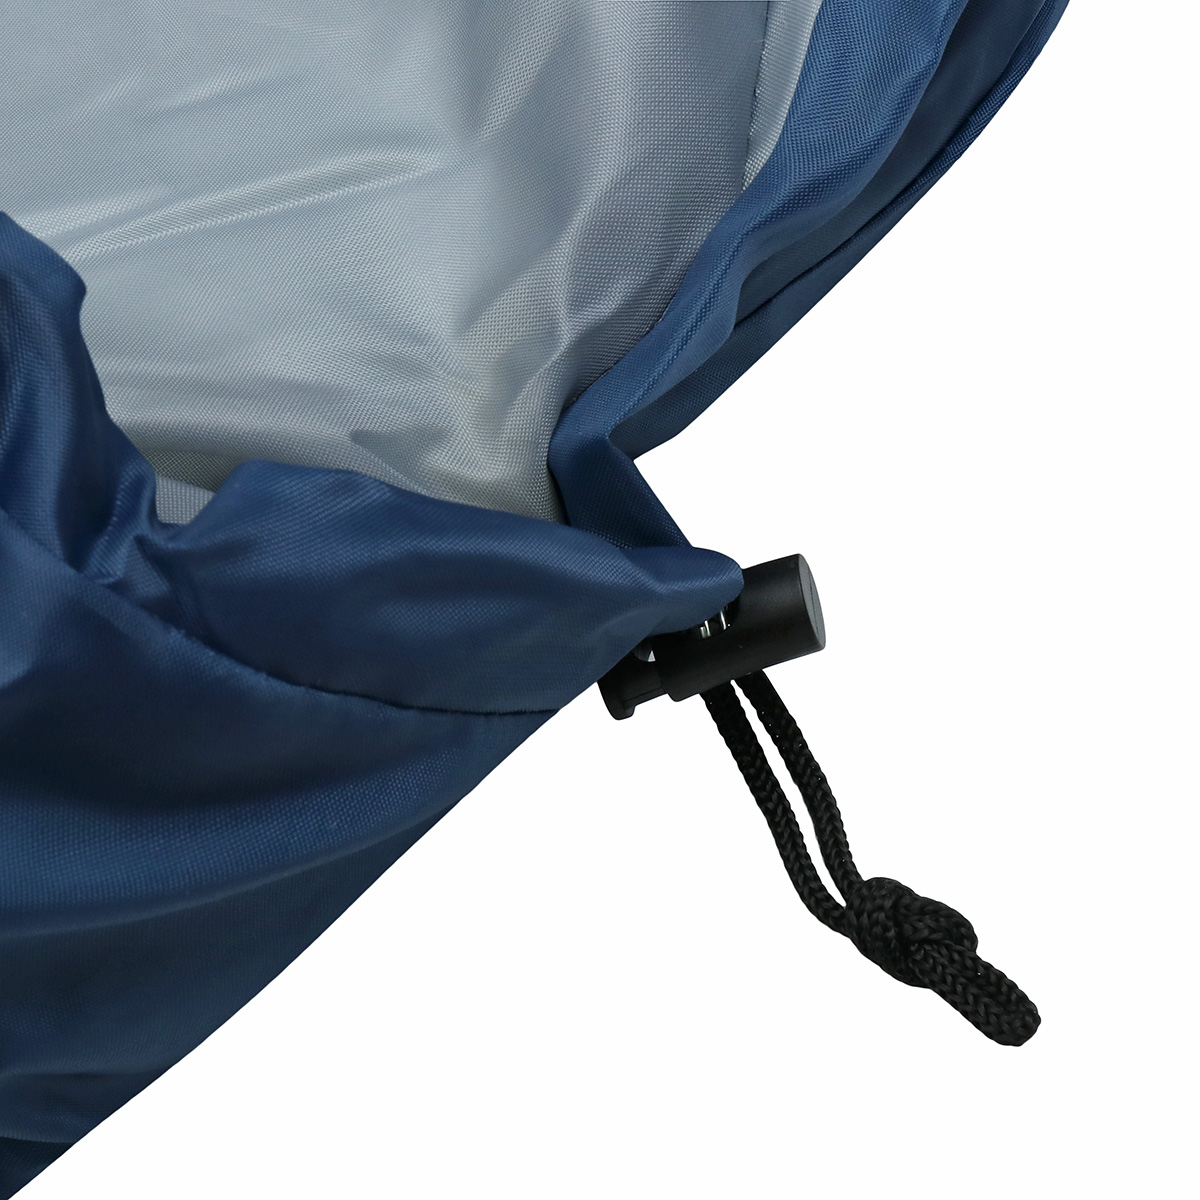 10x75CM-Waterproof-Camping-Envelope-Sleeping-Bag-Outdoor-Hiking-Backpacking-Sleeping-Bag-with-Compre-1647670-5